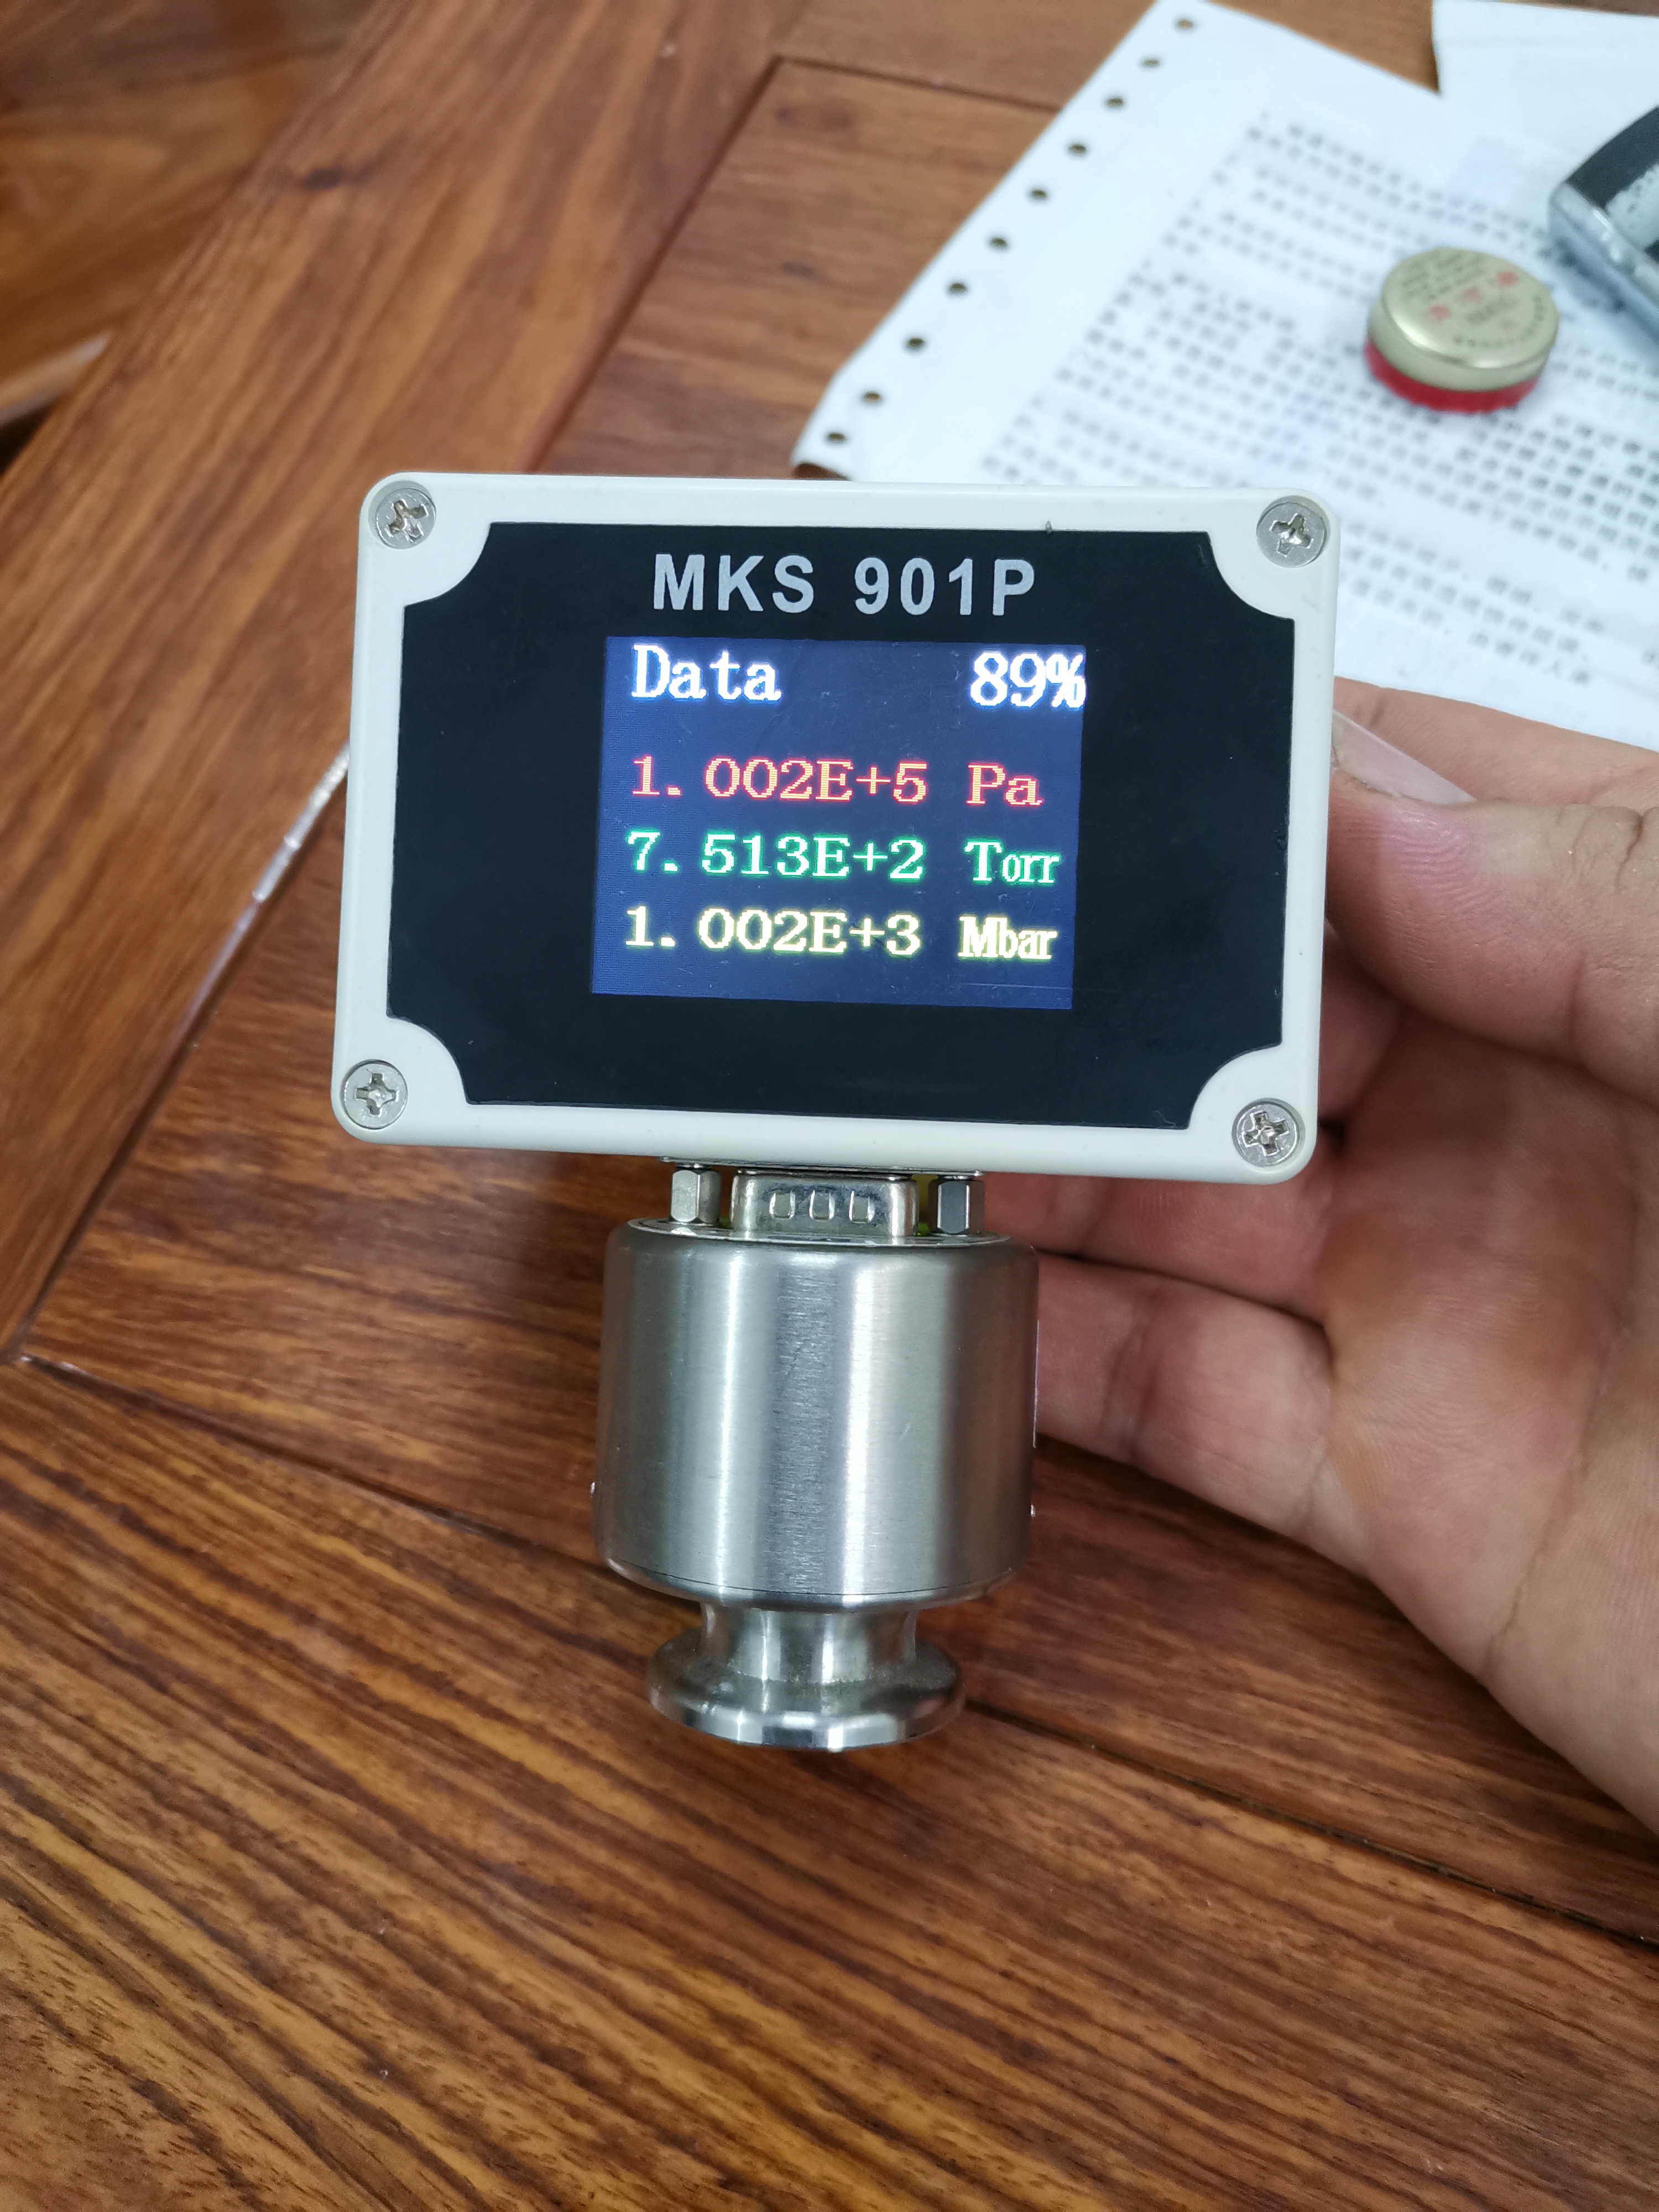 MKS901P真空计 手持式 便携式 真空计真空表 MKS901P真空计手持式图片